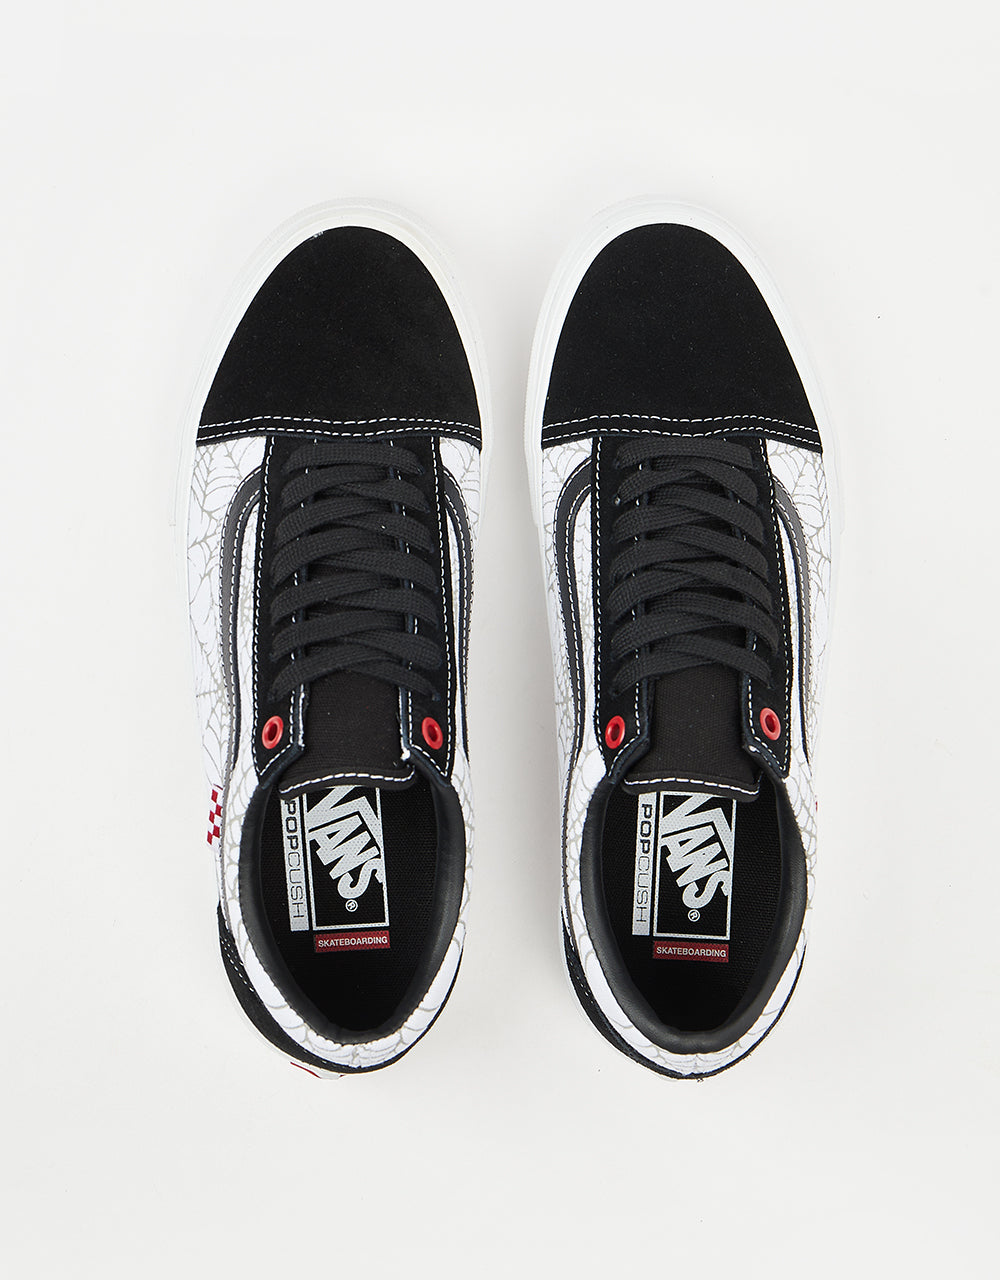 Vans Skate Old Skool Shoes - (Black Widow) Black/White/Red